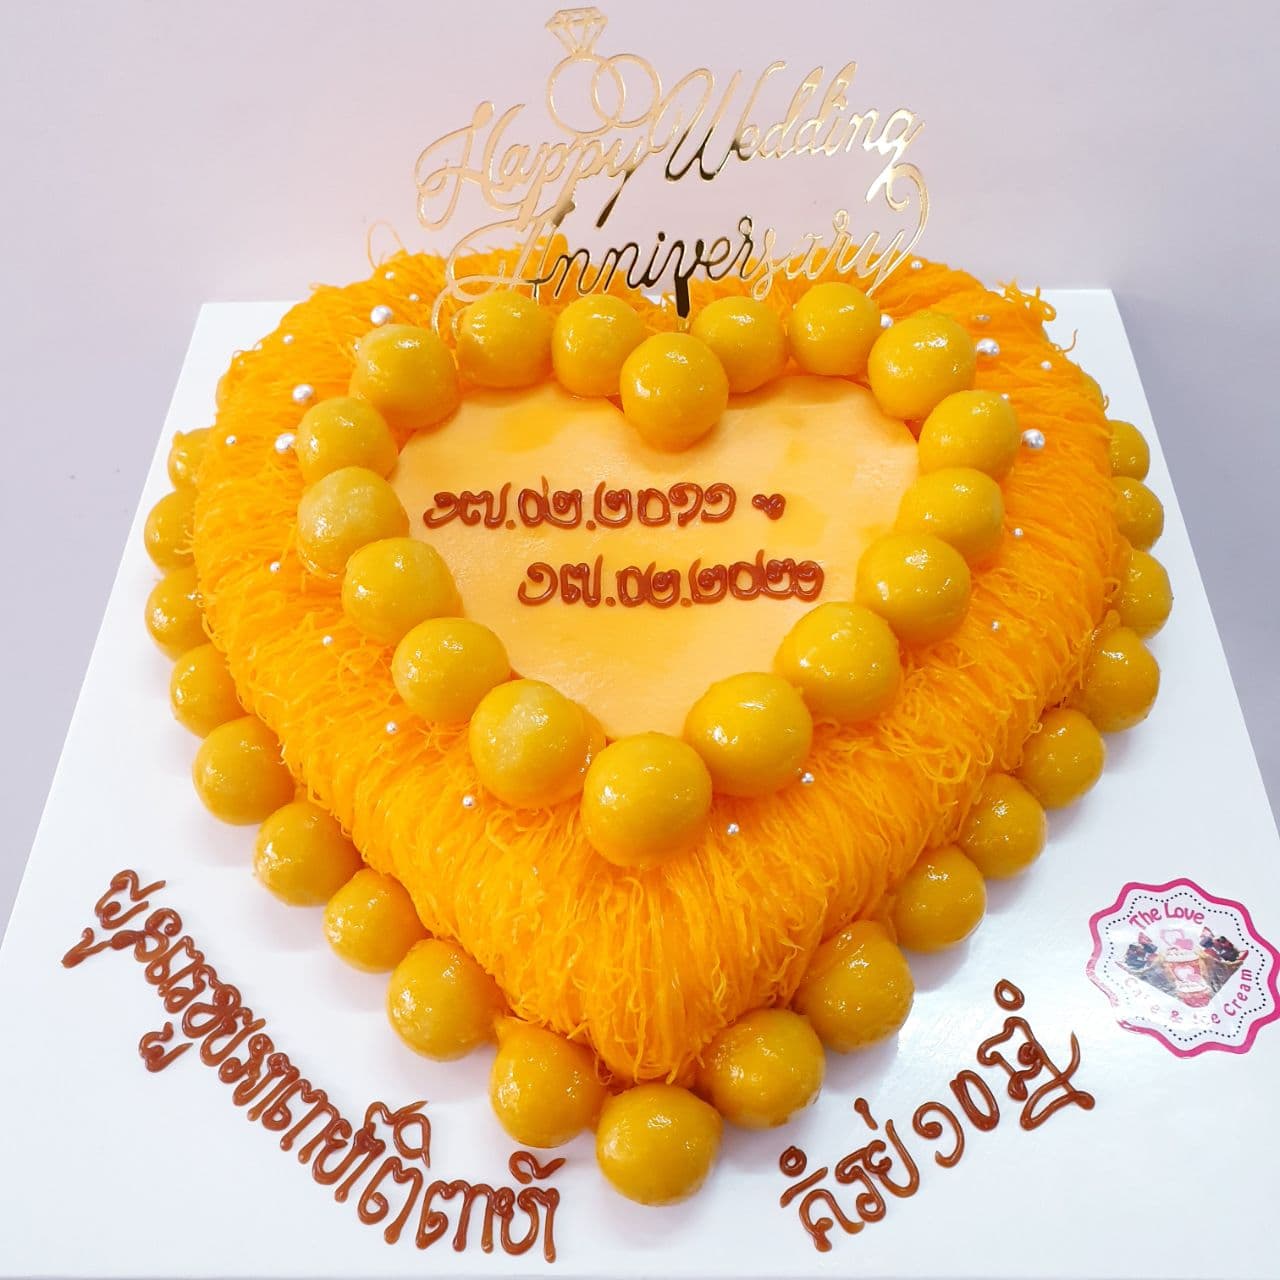 18.Heart-shaped golden fiber cake